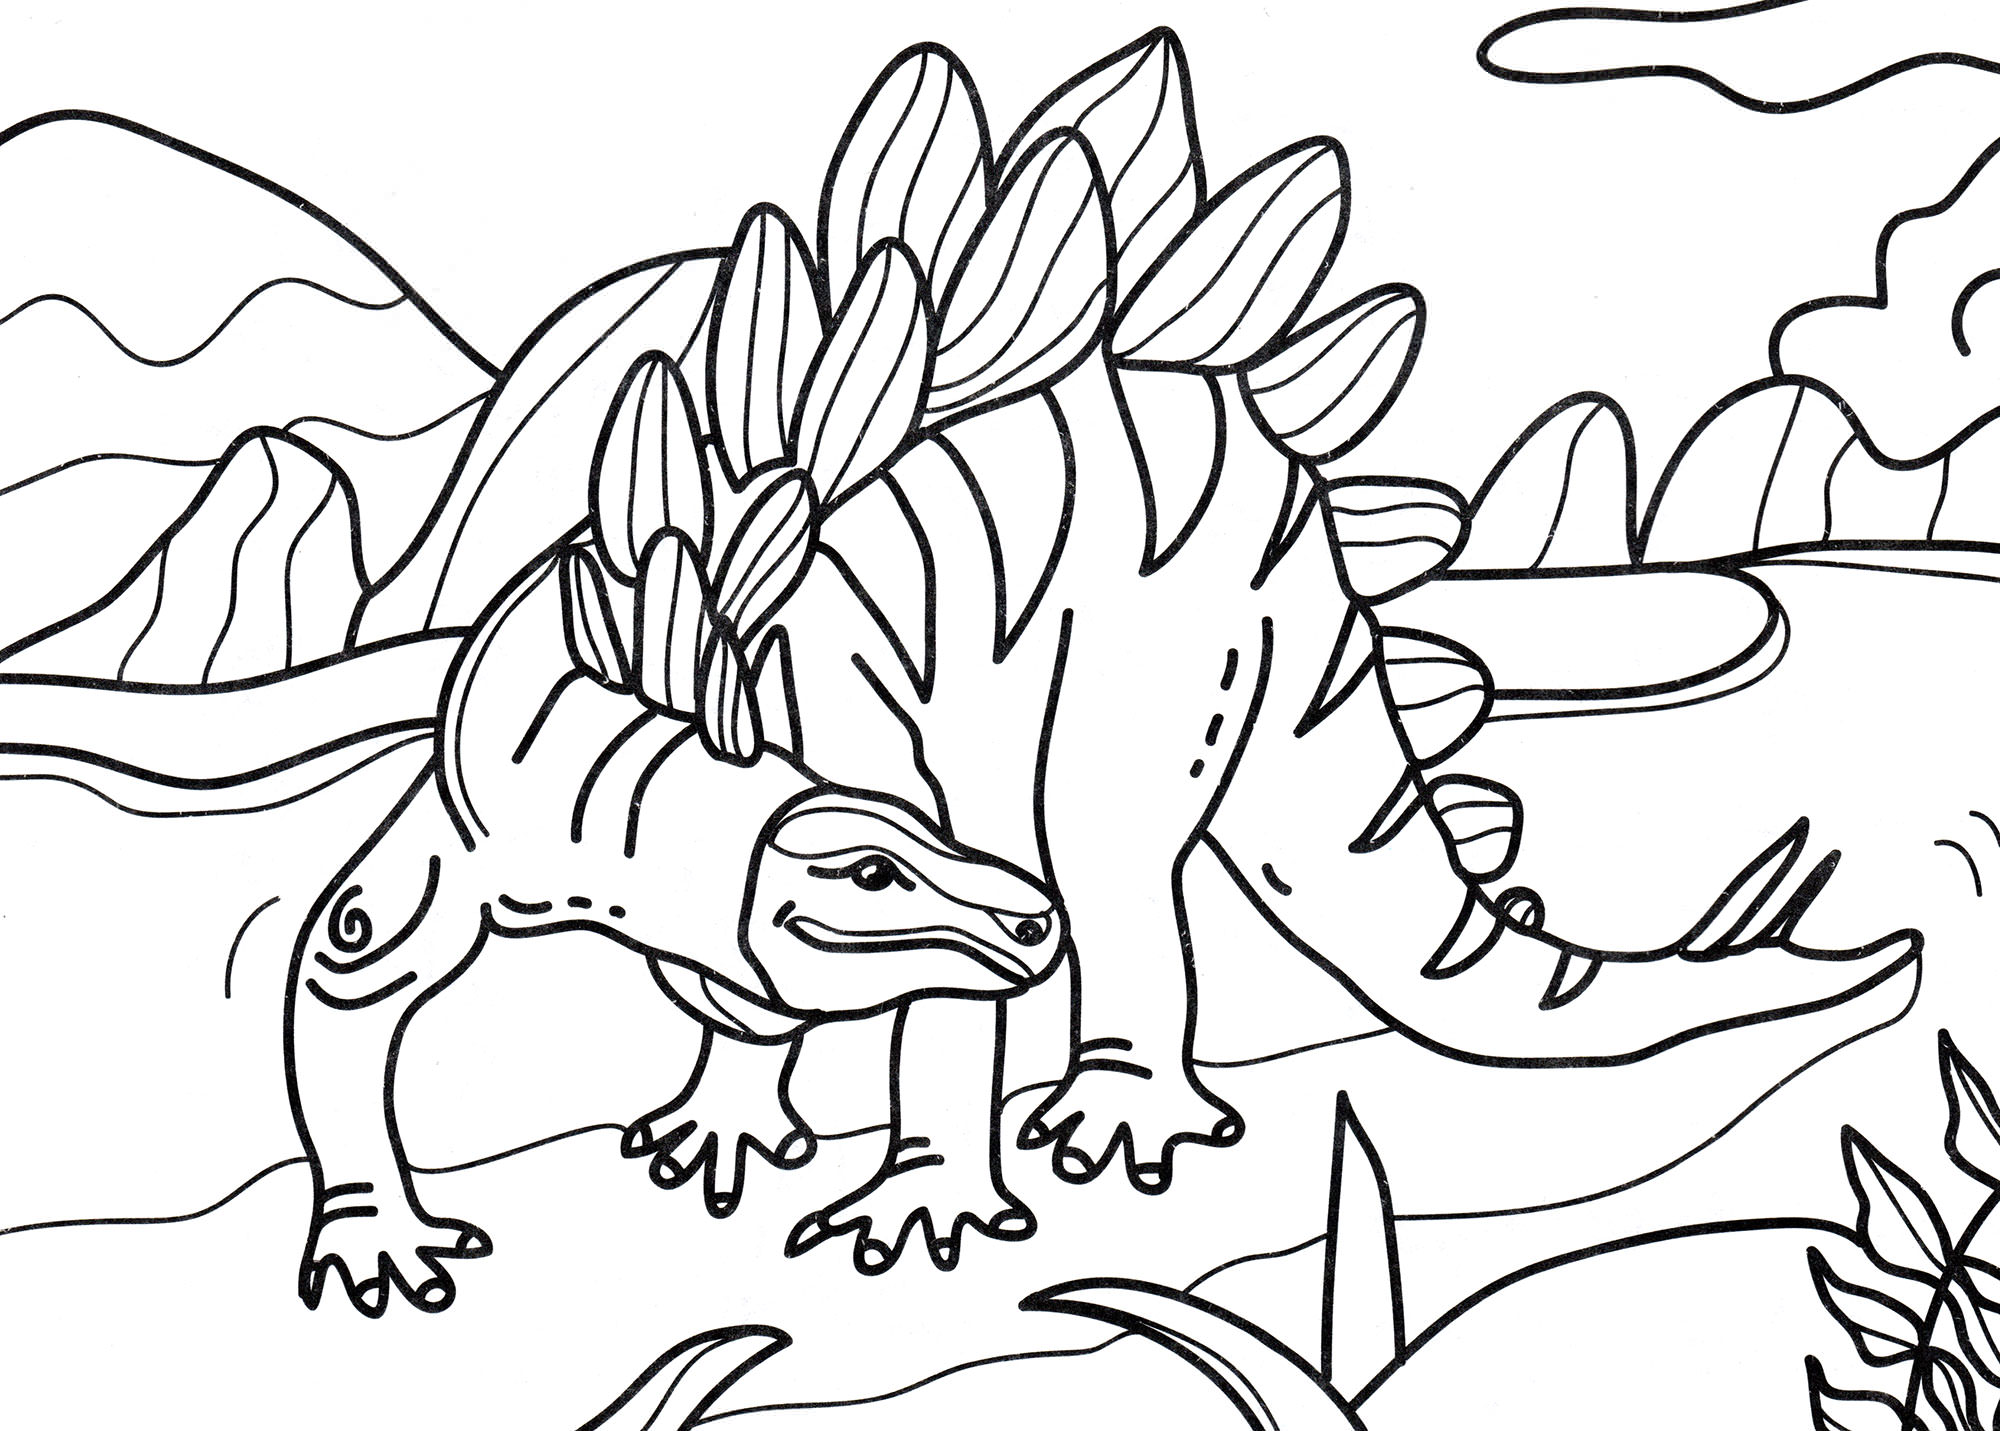 Розмальовка Стегозавр шукає їжу